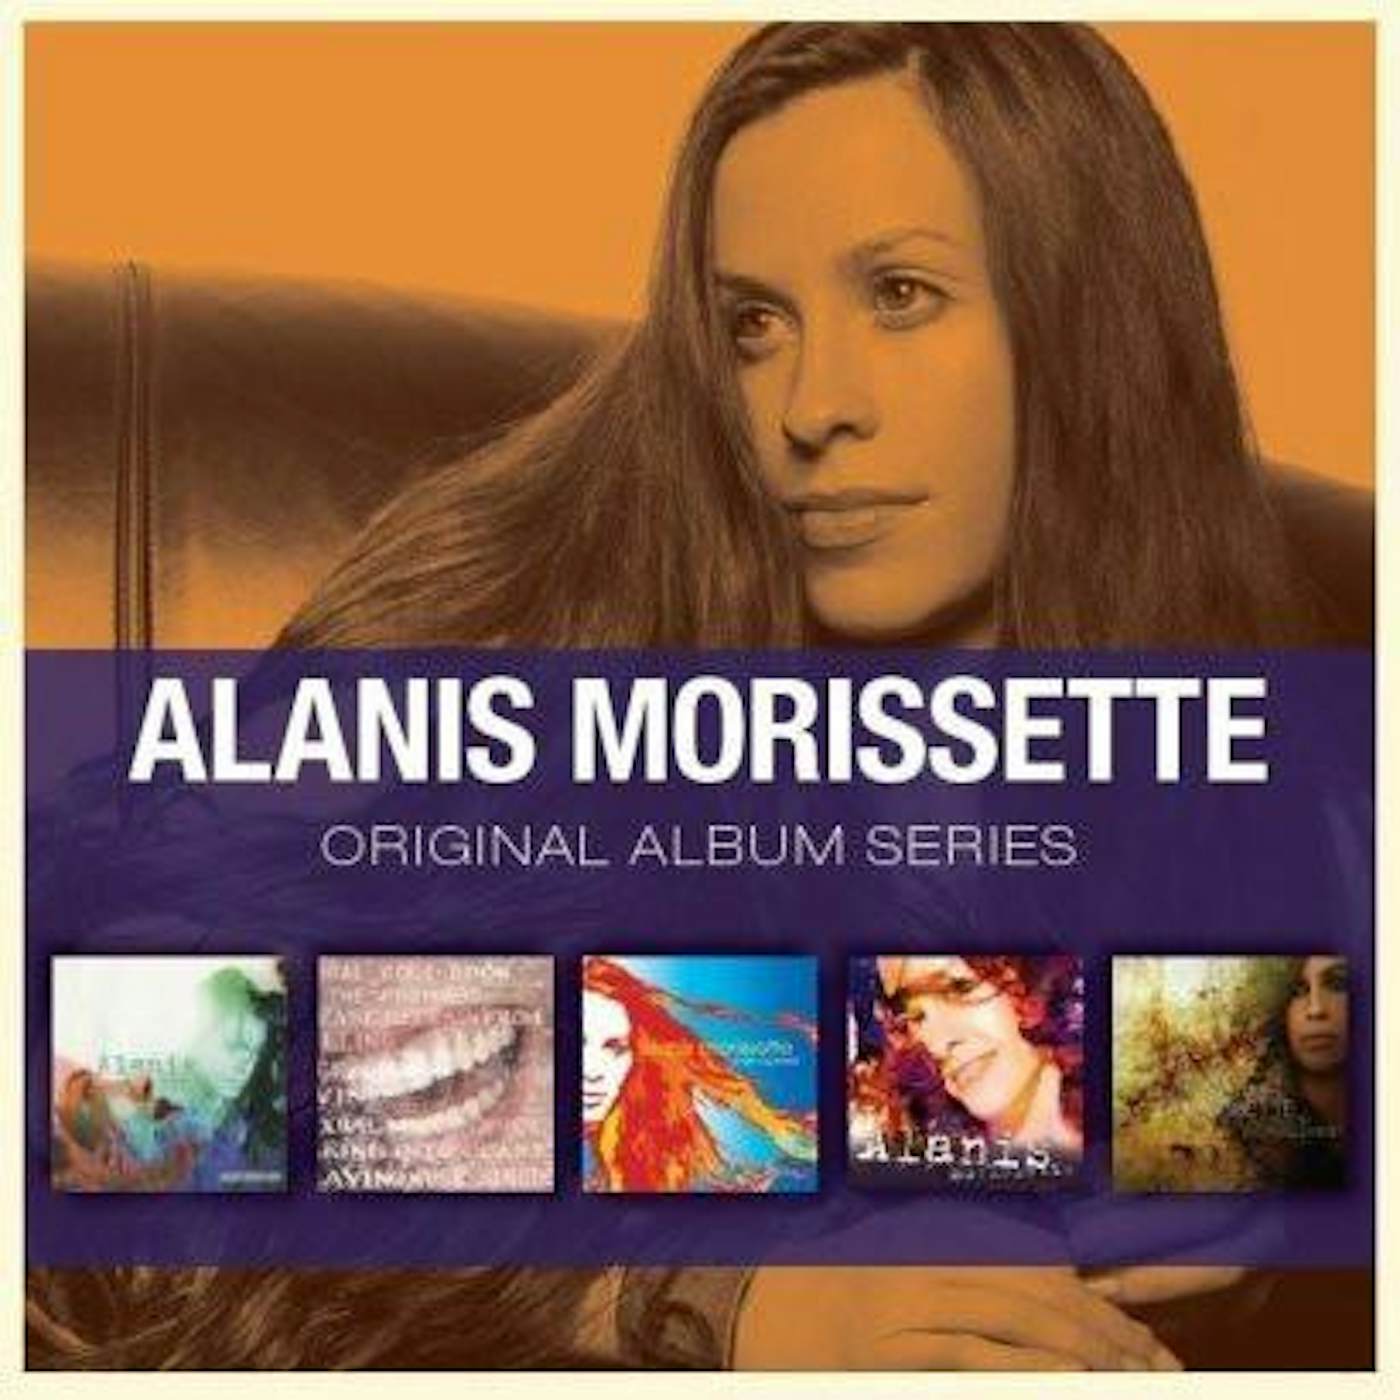 Alanis Morissette ORIGINAL ALBUM SERIES CD